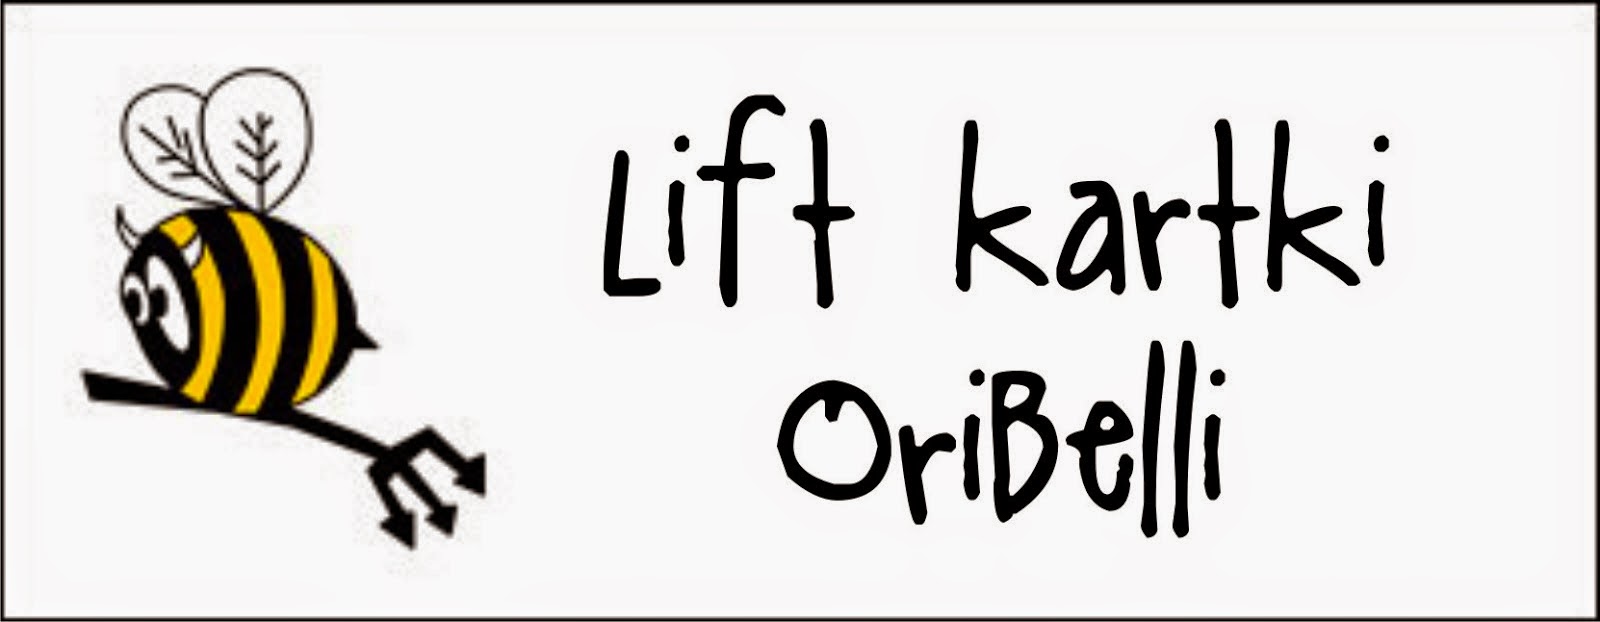 http://diabelskimlyn.blogspot.com/2014/04/lift-kartki-oribelli.html